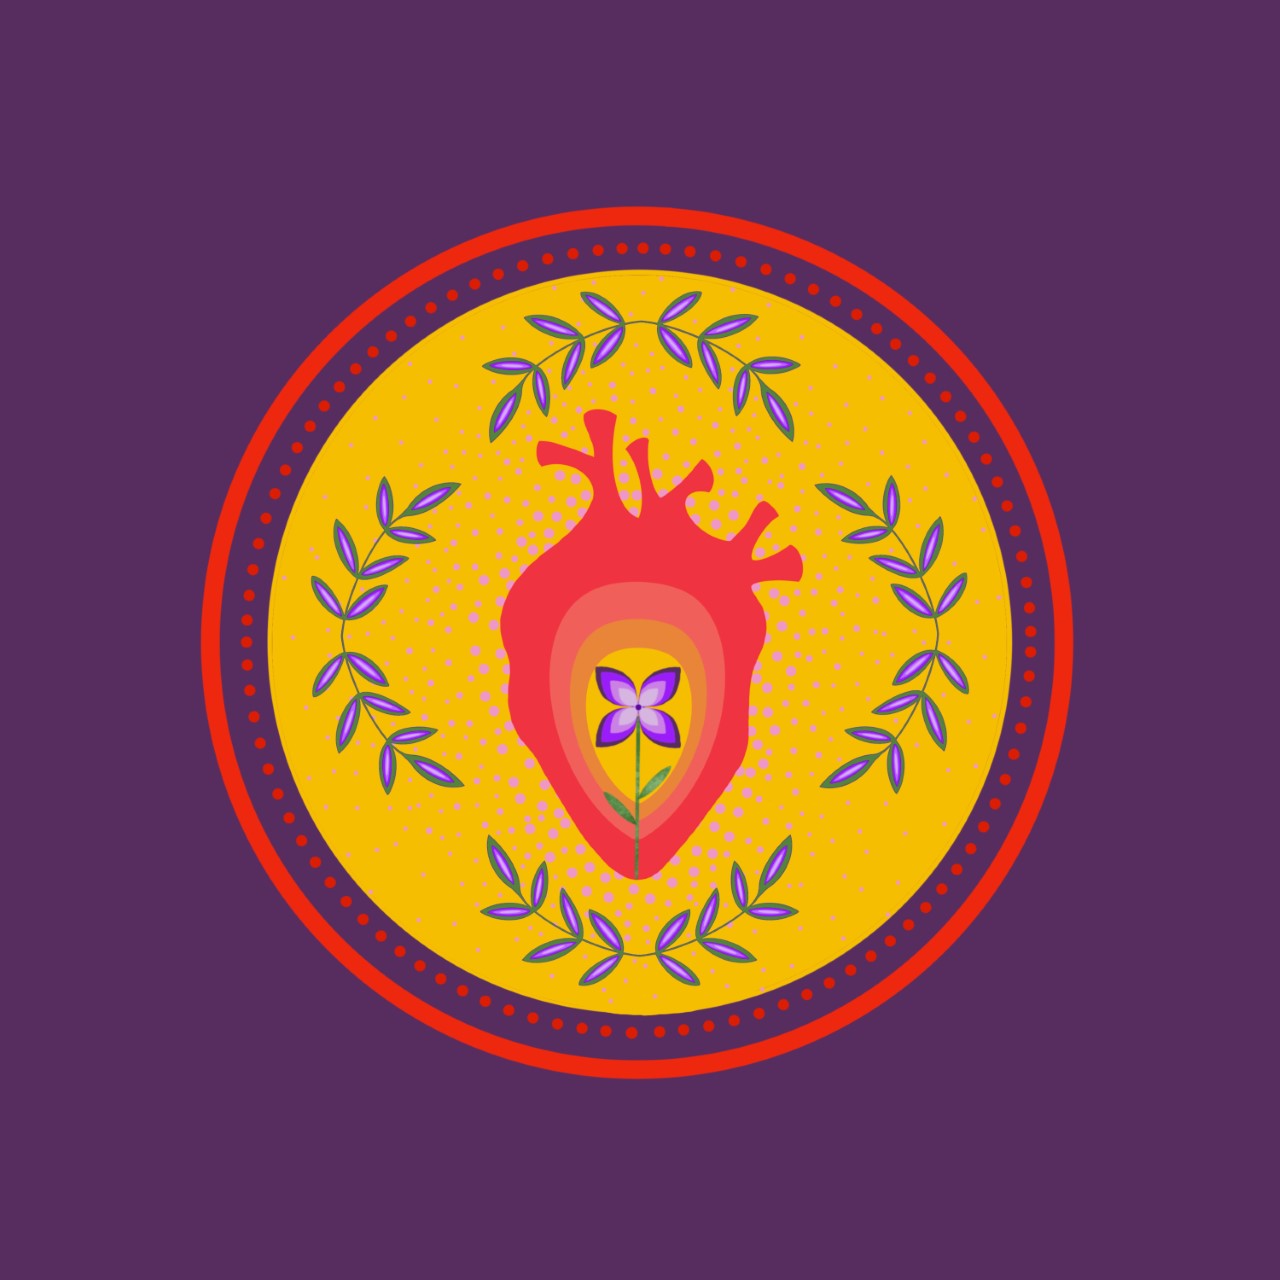 Réconciliation - Eruoma Awashish - license d'utilisation 2022-2027 - un coeur rouge dans un cercle jaune sur fond mauve; au centre une fleur.